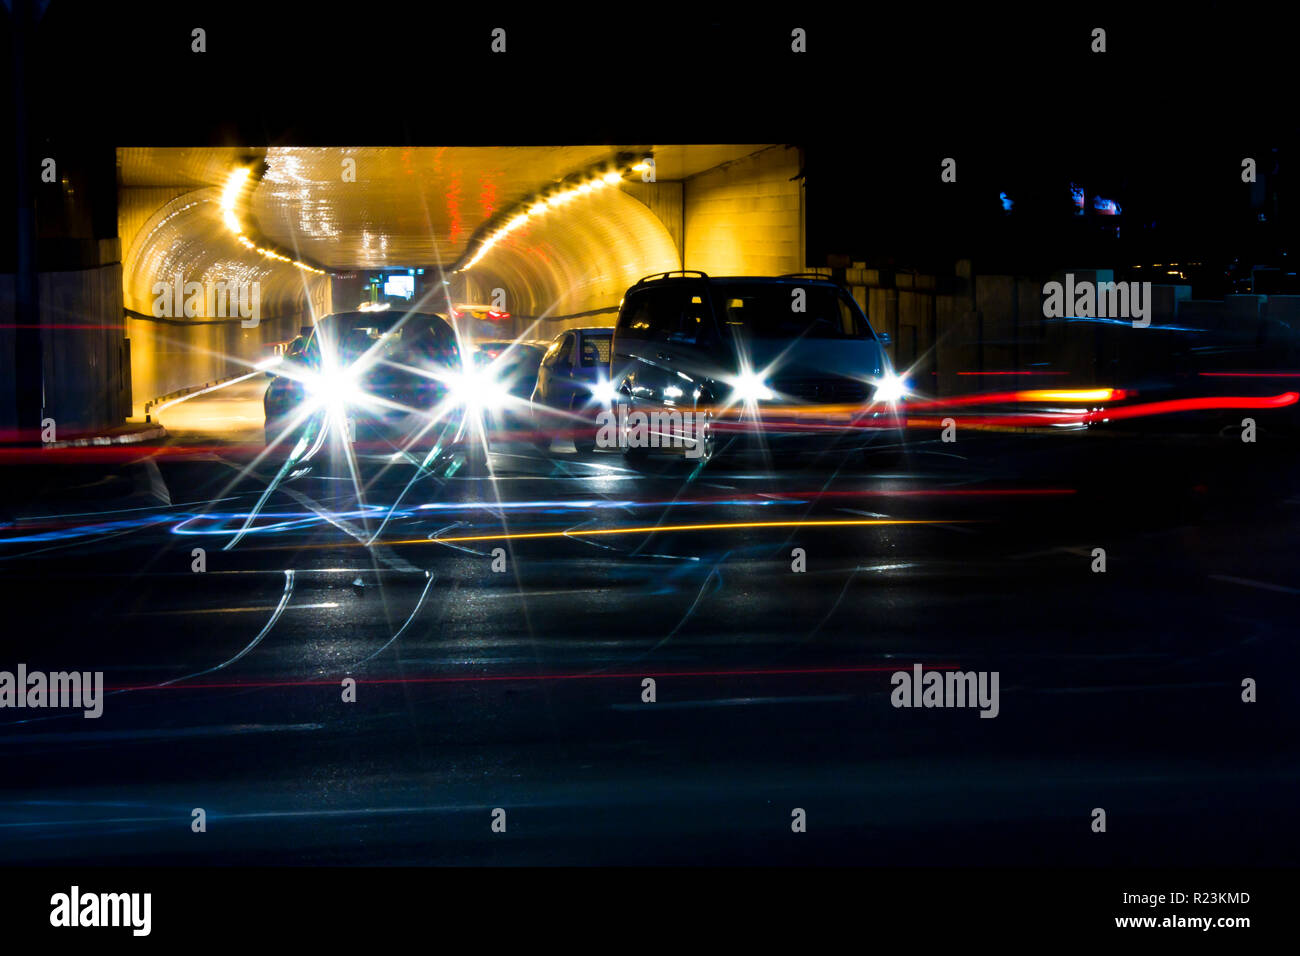 Nachtverkehr auf Straßen der Stadt. Autos in der Warteschlange am Tunnelausgang wartet an Kreuzung beim führen von Fahrzeugen, die bewegte Vergangenheit verlassen Farbe Lichtspuren Stockfoto